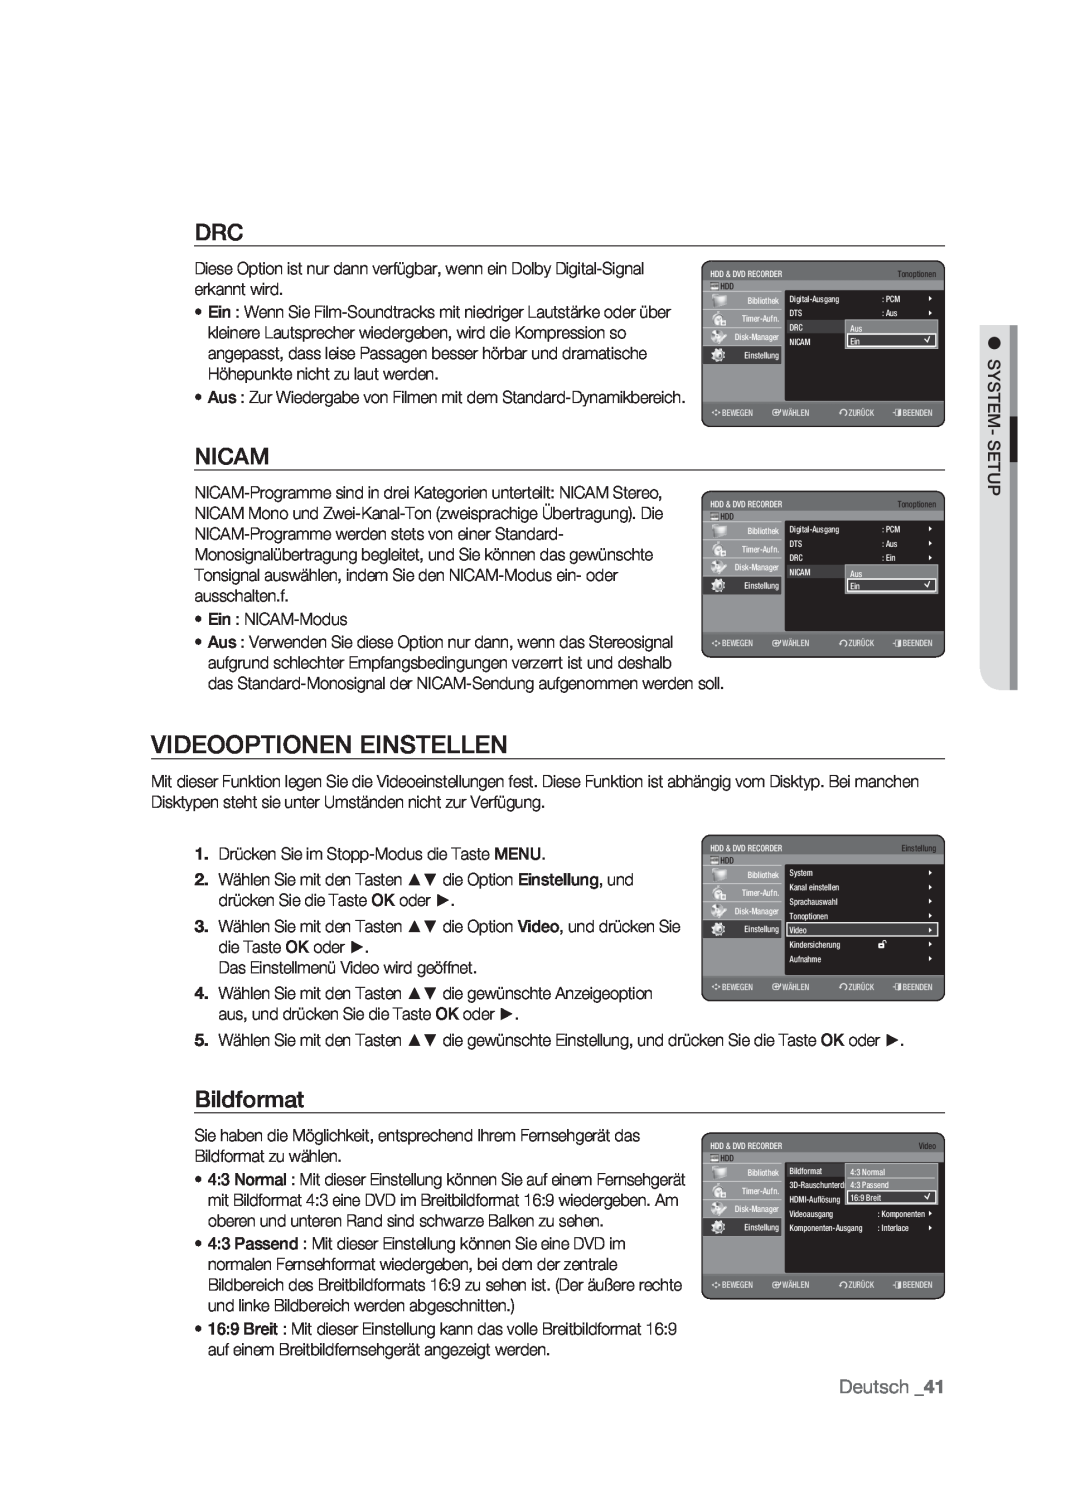 Samsung DVD-HR773/XEB, DVD-HR773/XEN, DVD-HR773/XEG, DVD-HR773/AUS manual Videooptionen Einstellen, Nicam, Bildformat, Deutsch 